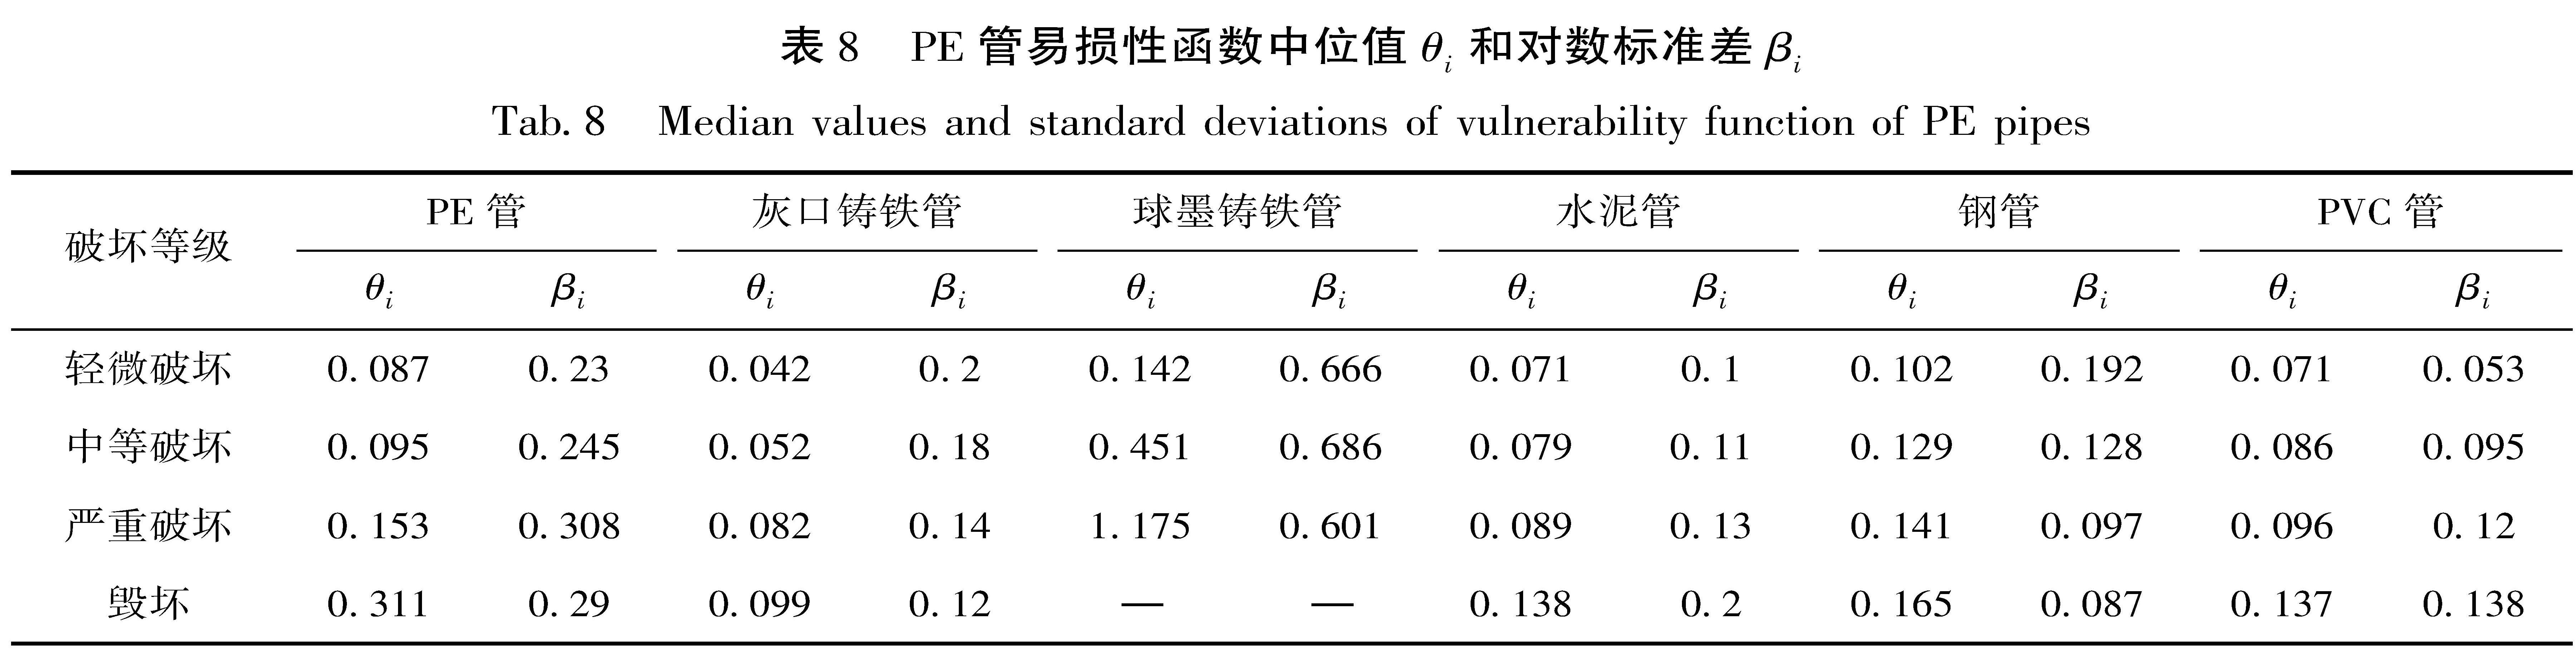 表8 PE管易损性函数中位值θi和对数标准差βi<br/>Tab.8 Median values and standard deviations of vulnerability function of PE pipes